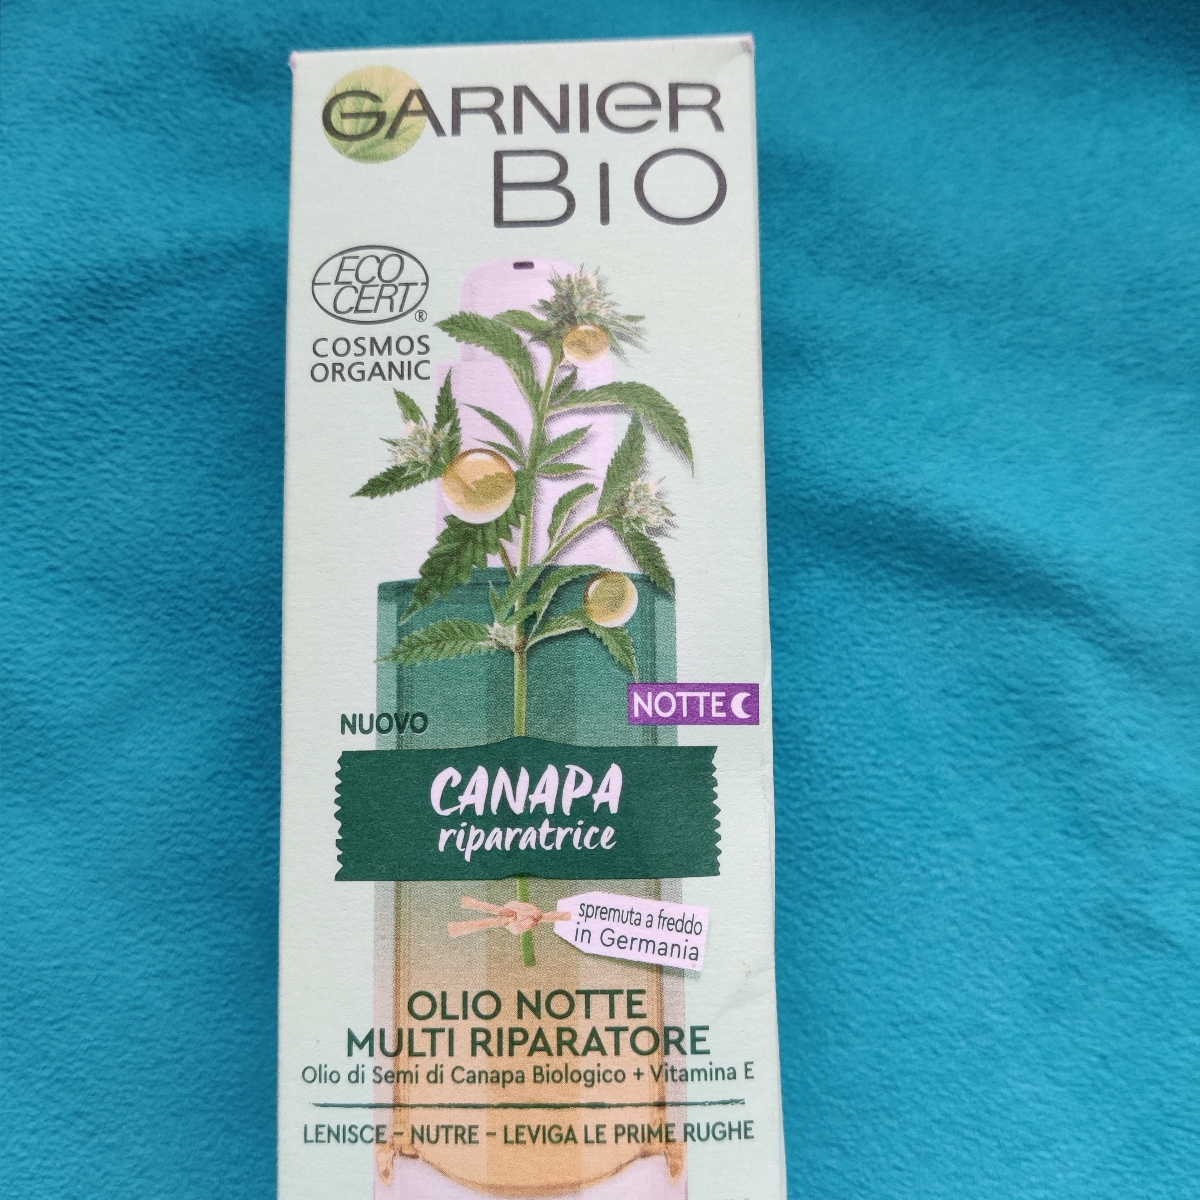 Garnier Bio Olio notte riparatore alla canapa Reviews | abillion